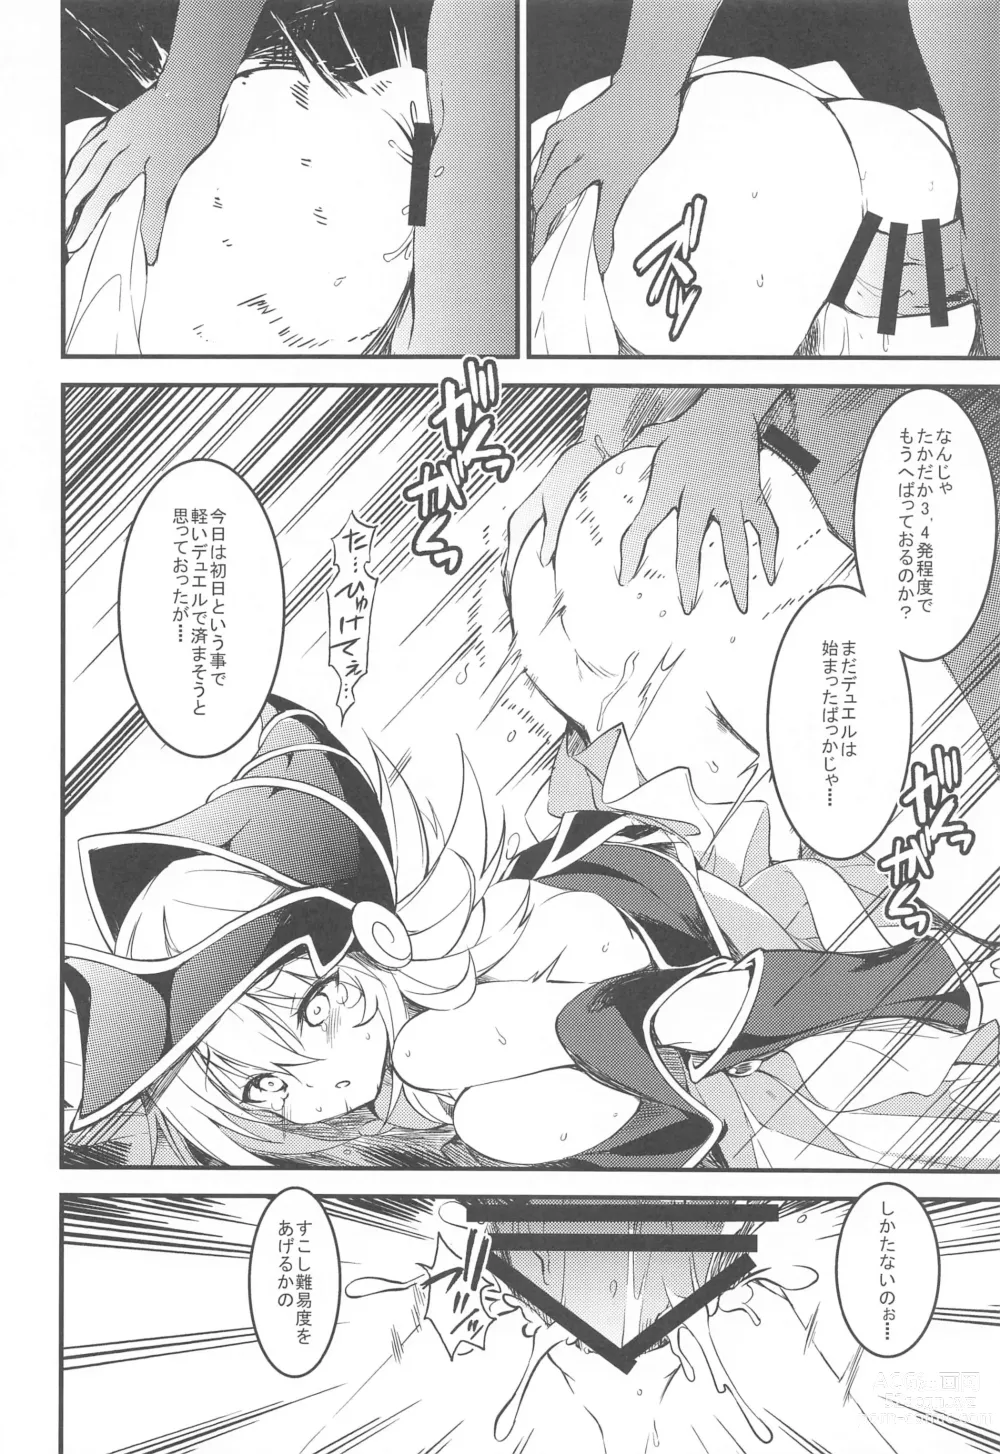 Page 7 of doujinshi Ikenie no Saidan